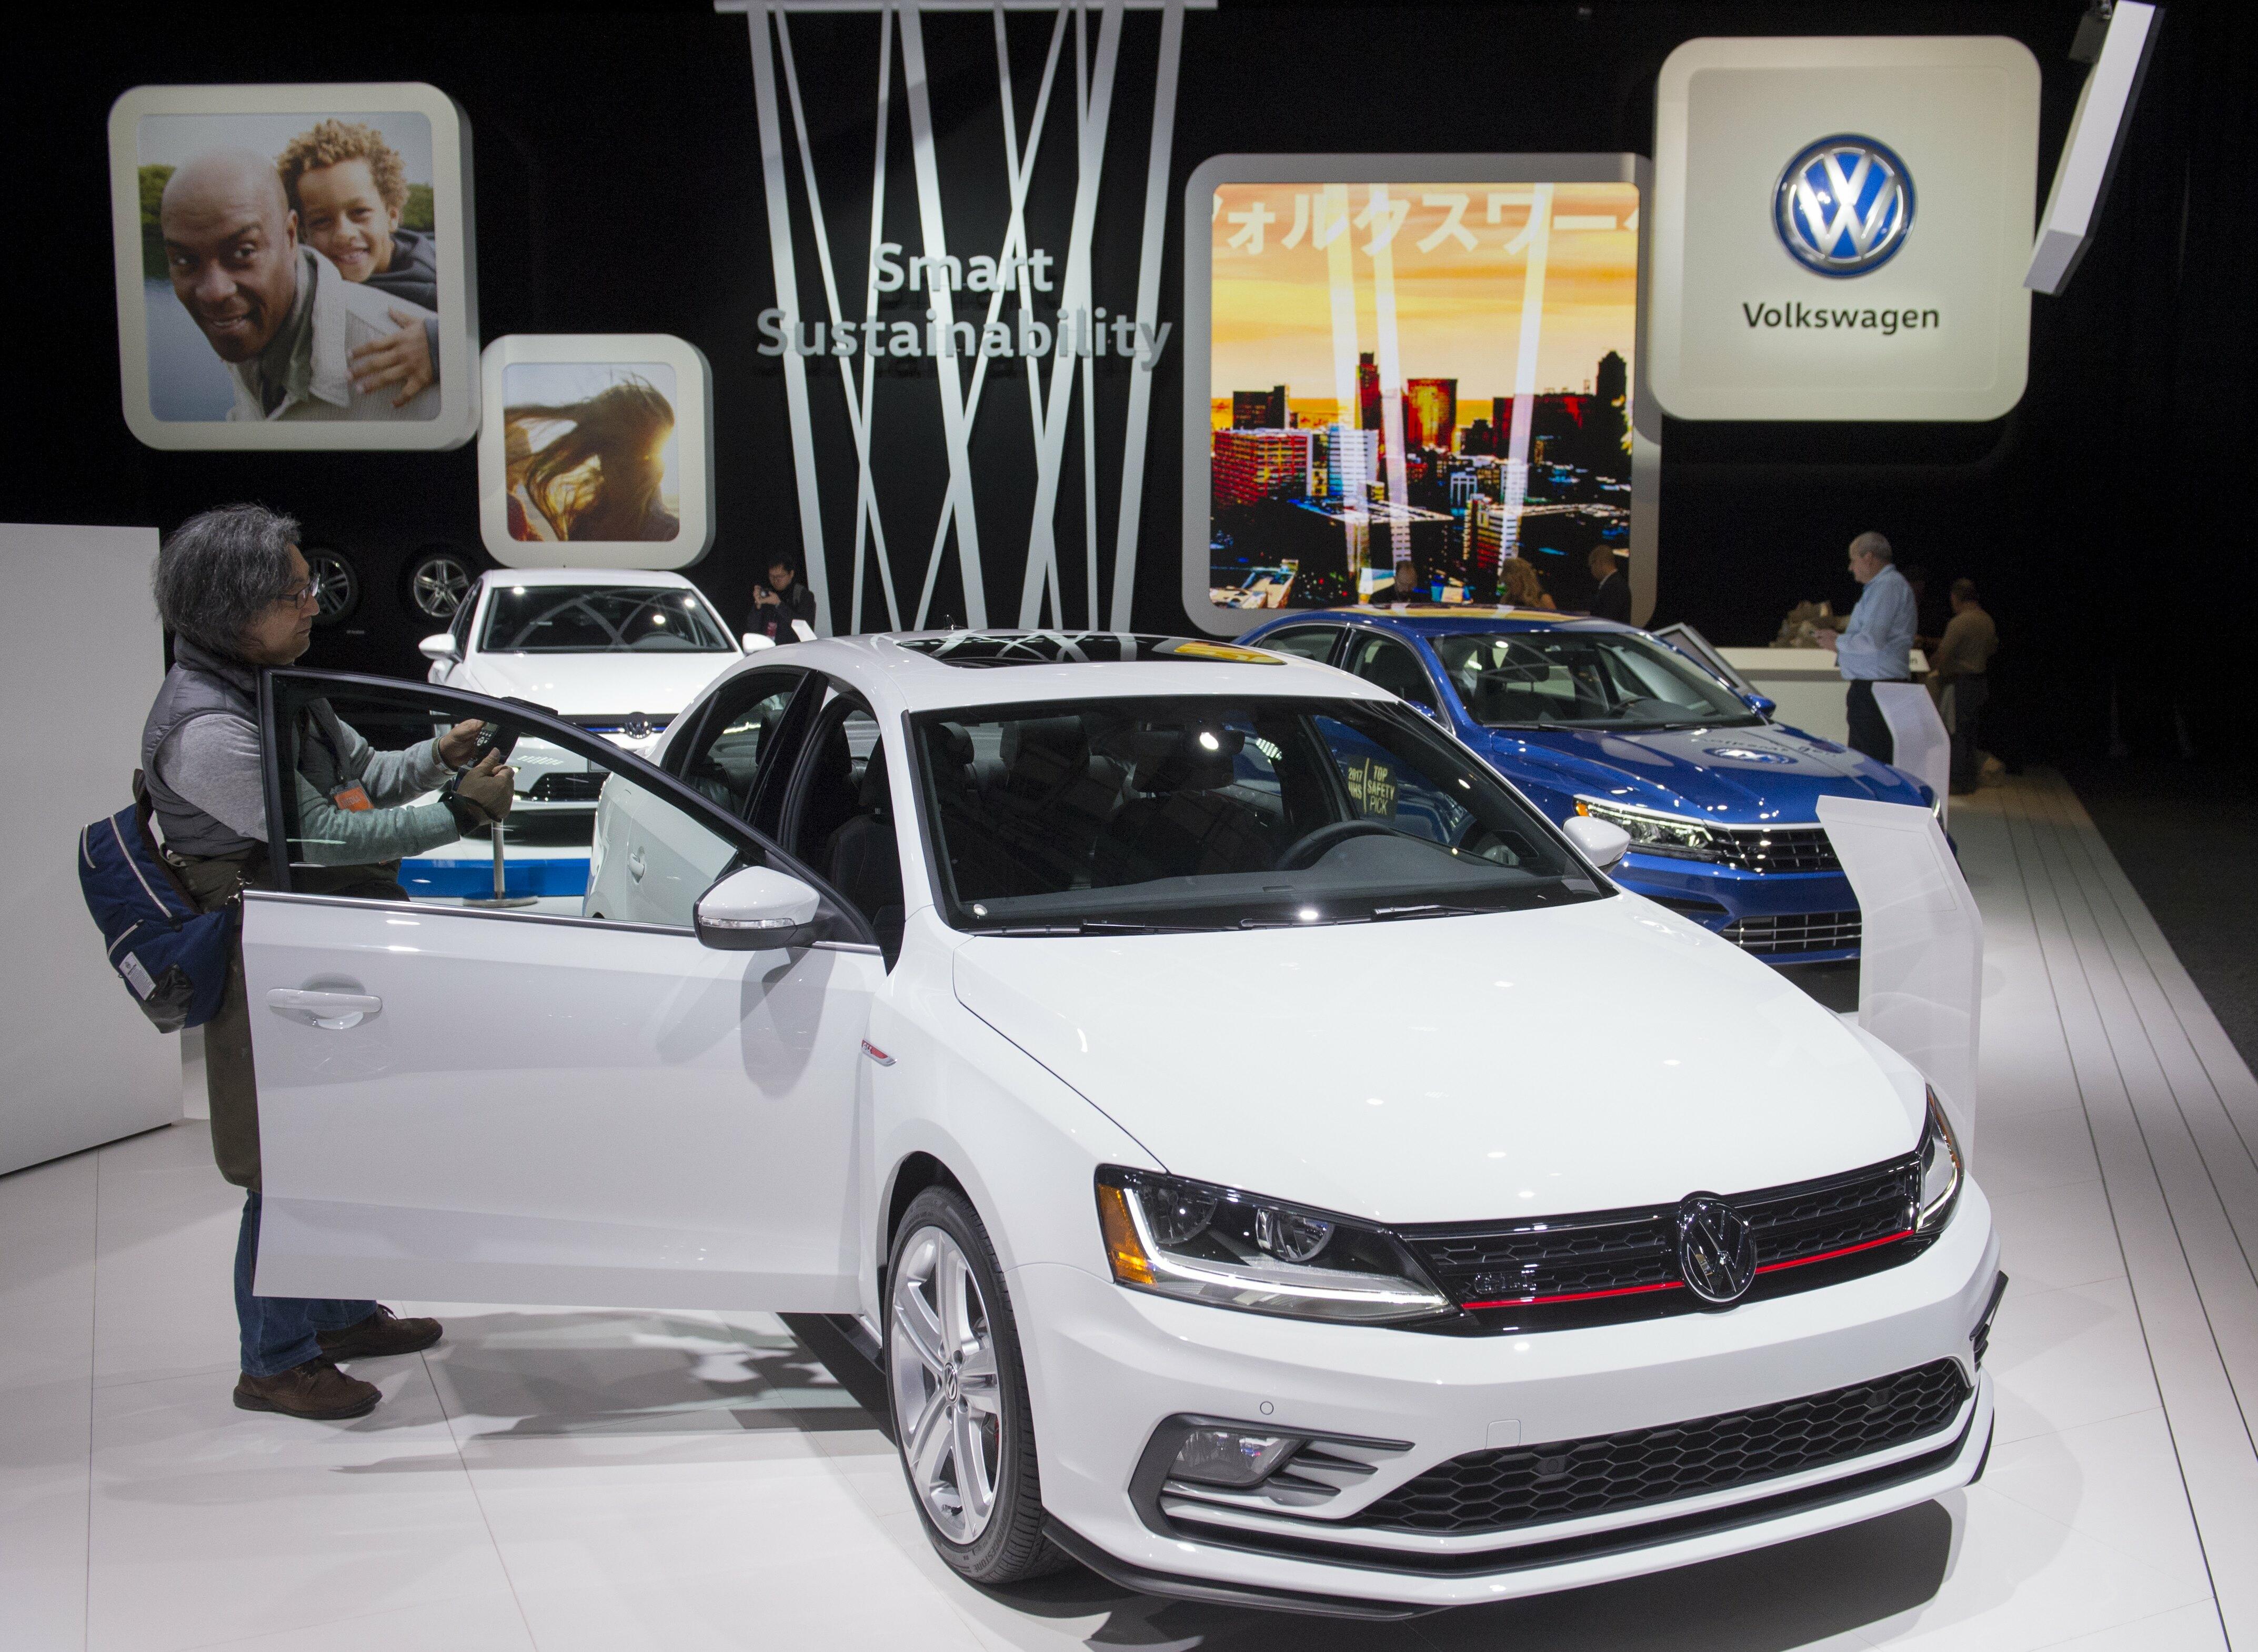 Volkswagen Recalls 200,000 Jettas To Fix Fuel Leaks That Can Spark